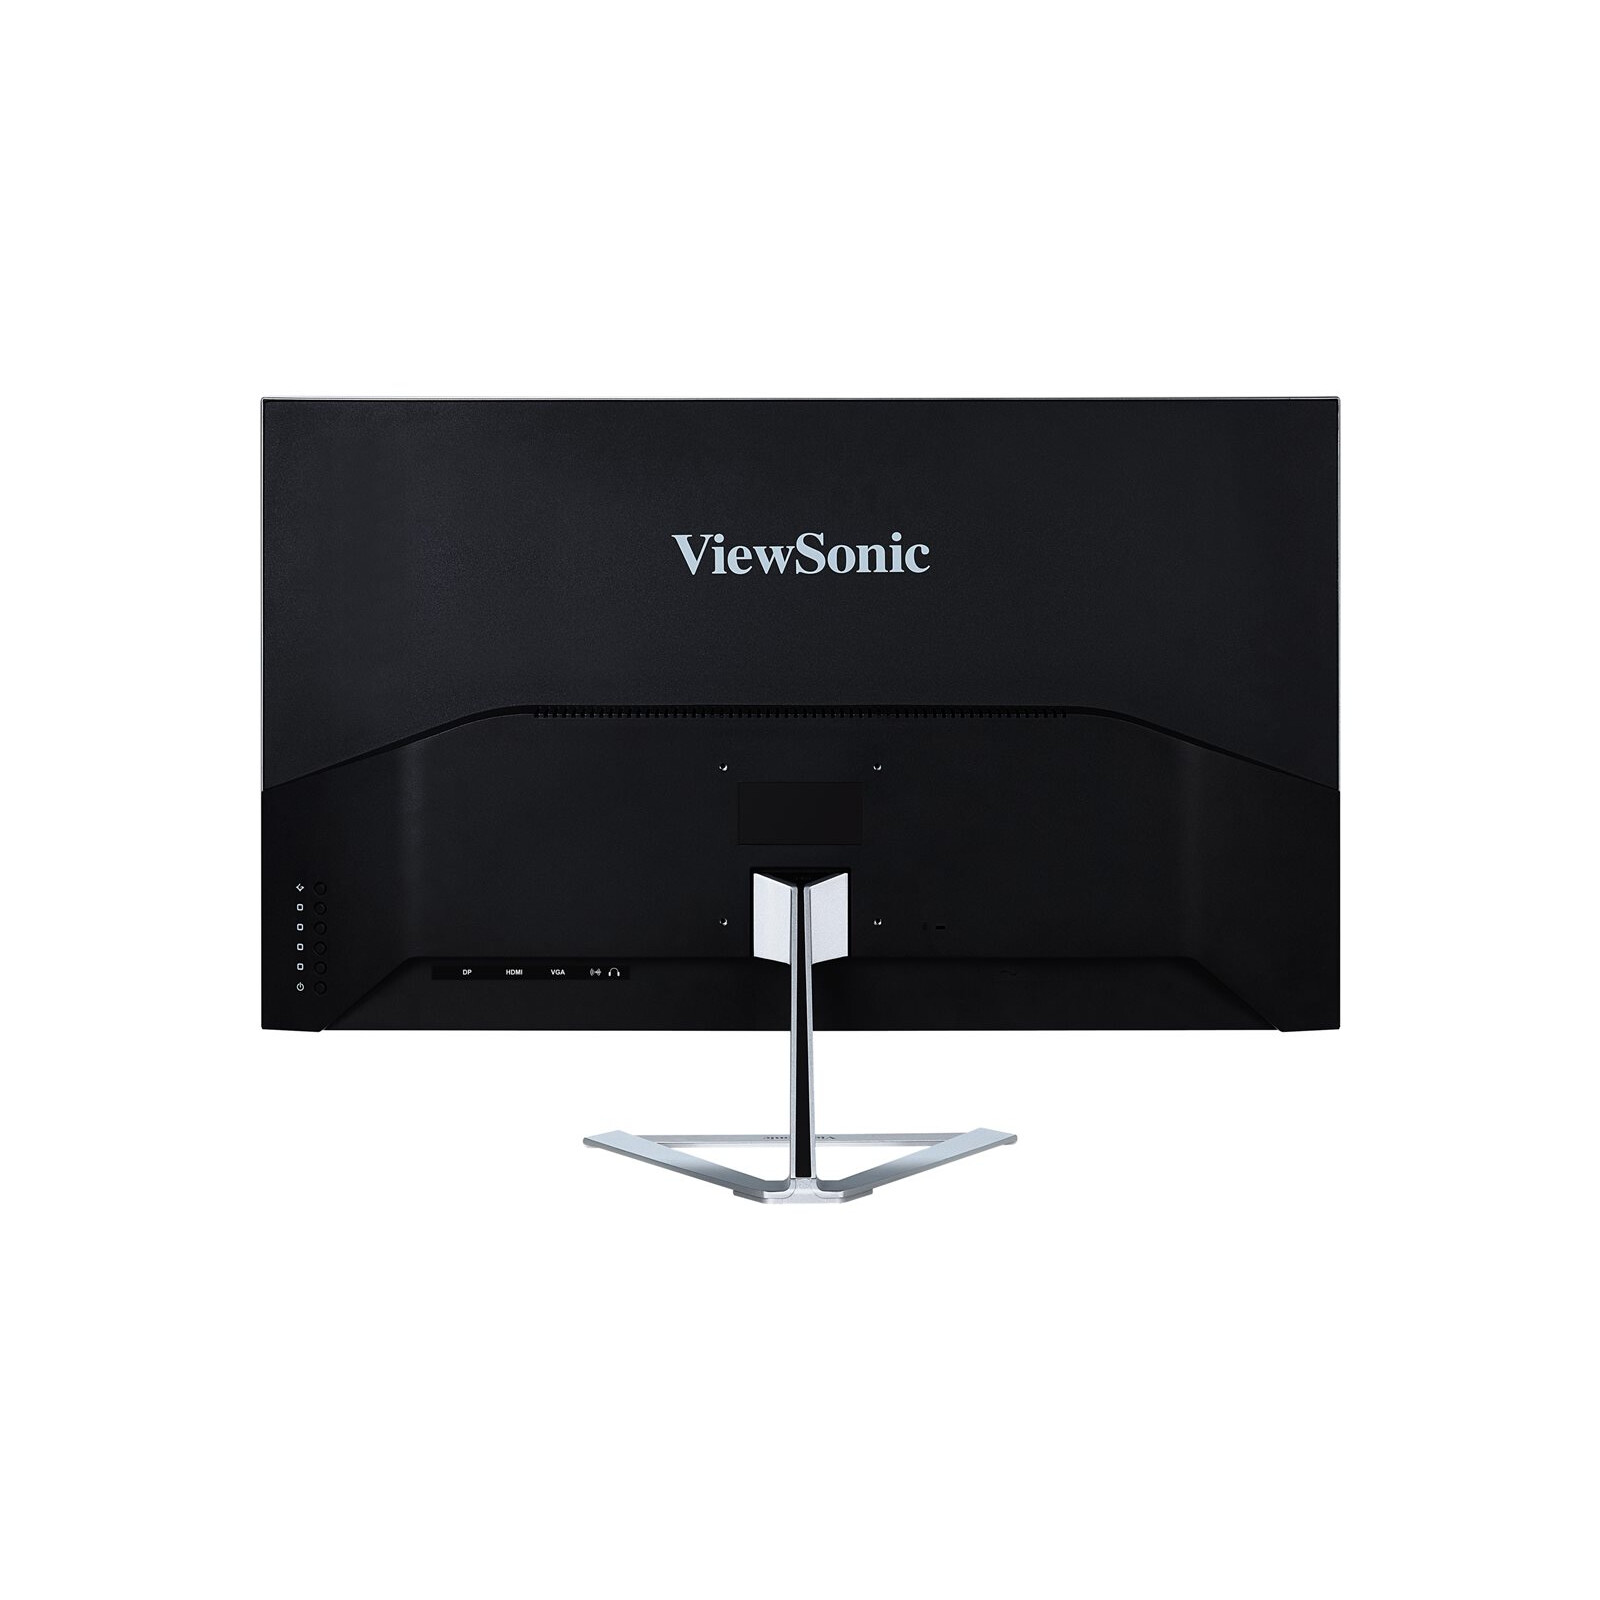 Viewsonic VX3276-MHD-2 32" FHD Monitor